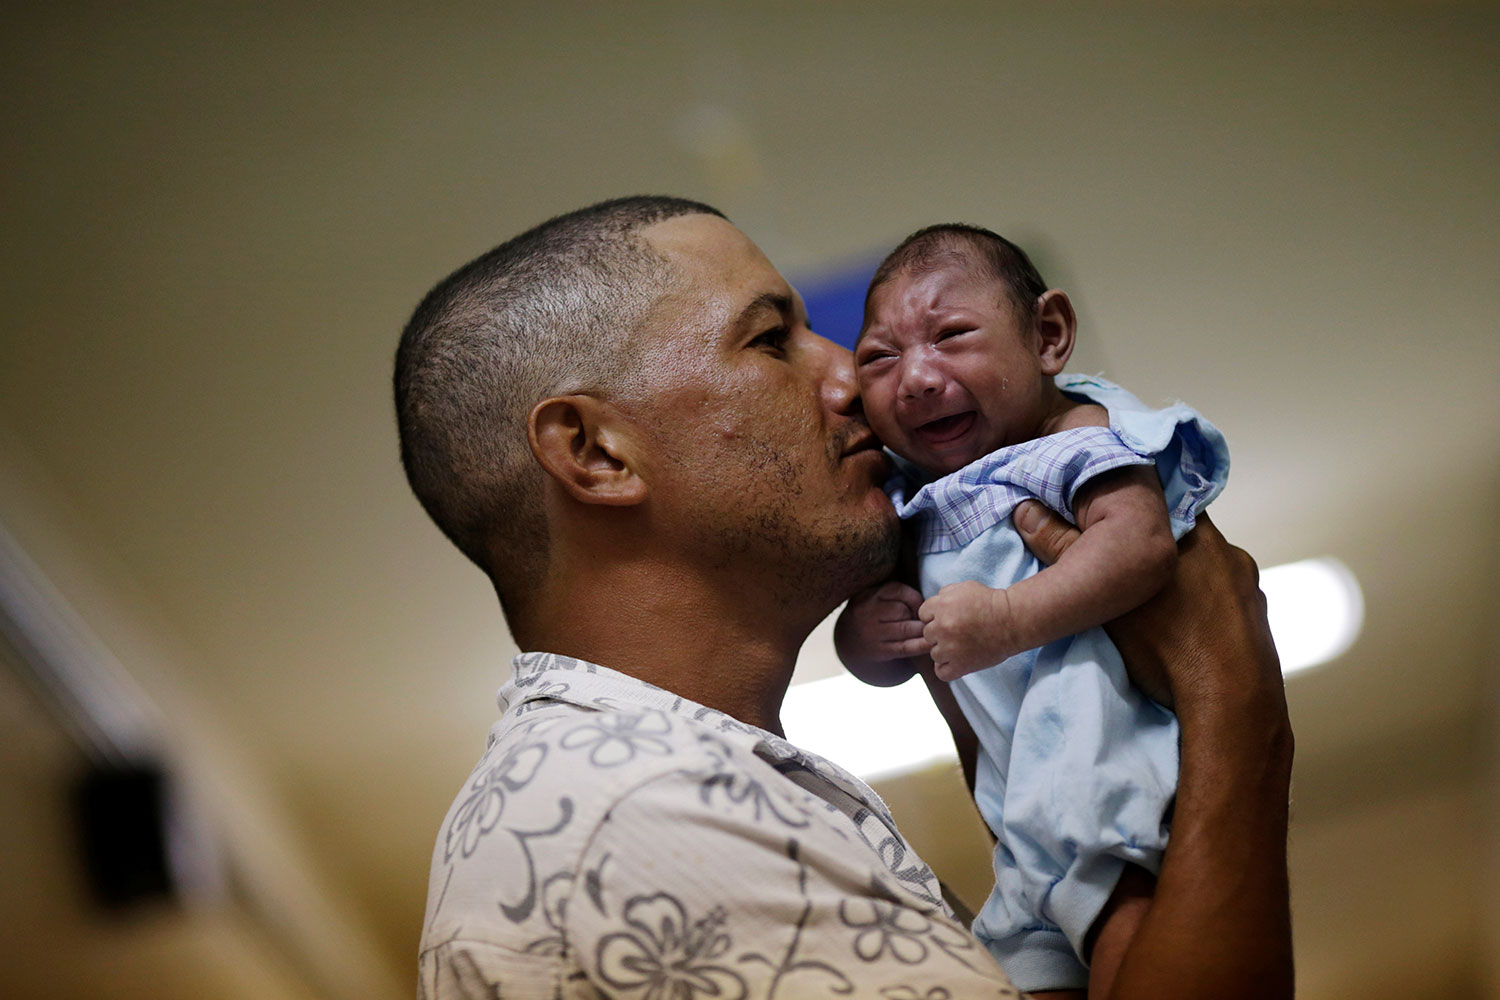 El zika, causa muy probable de microcefalias en niños